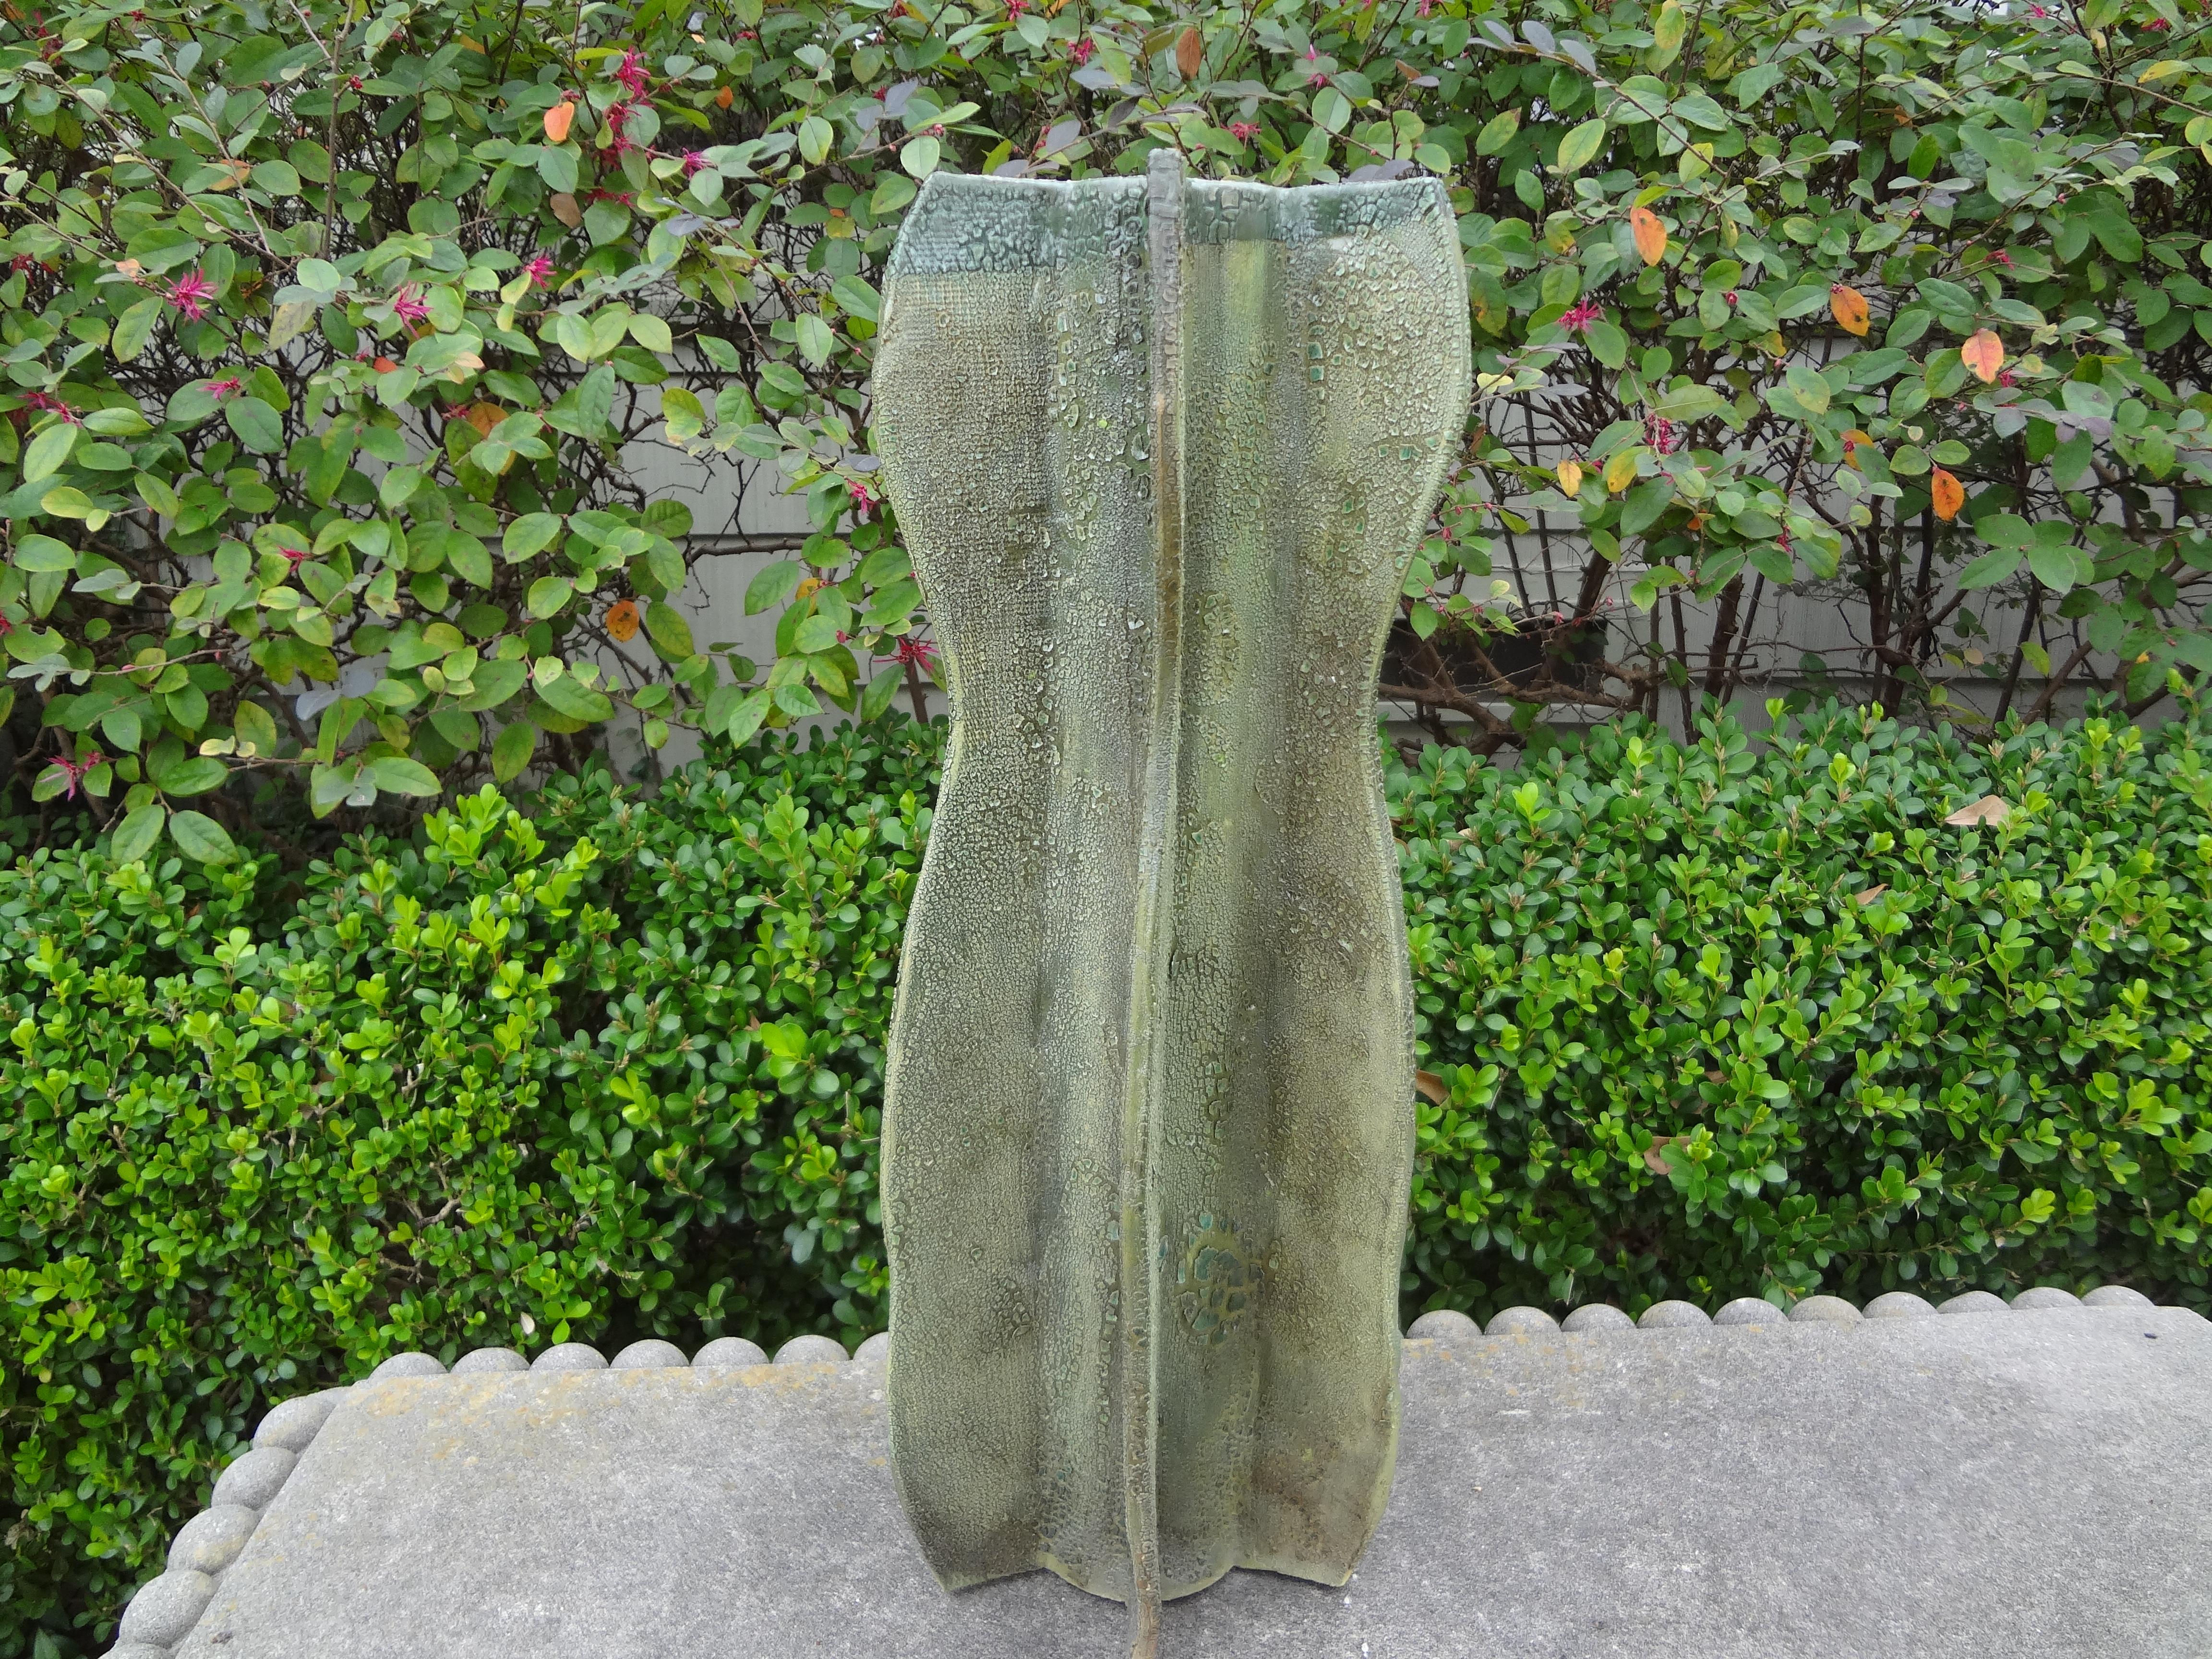 Vase mit Kaktus aus glasierter Keramik.
Wunderschöne glasierte Kaktusvase aus Keramik des 20. Jahrhunderts. Diese hohe Vase hat eine sehr ungewöhnliche Glasur, die einen echten Kaktus nachahmt. Ein tolles Accessoire oder perfekt für Ihre